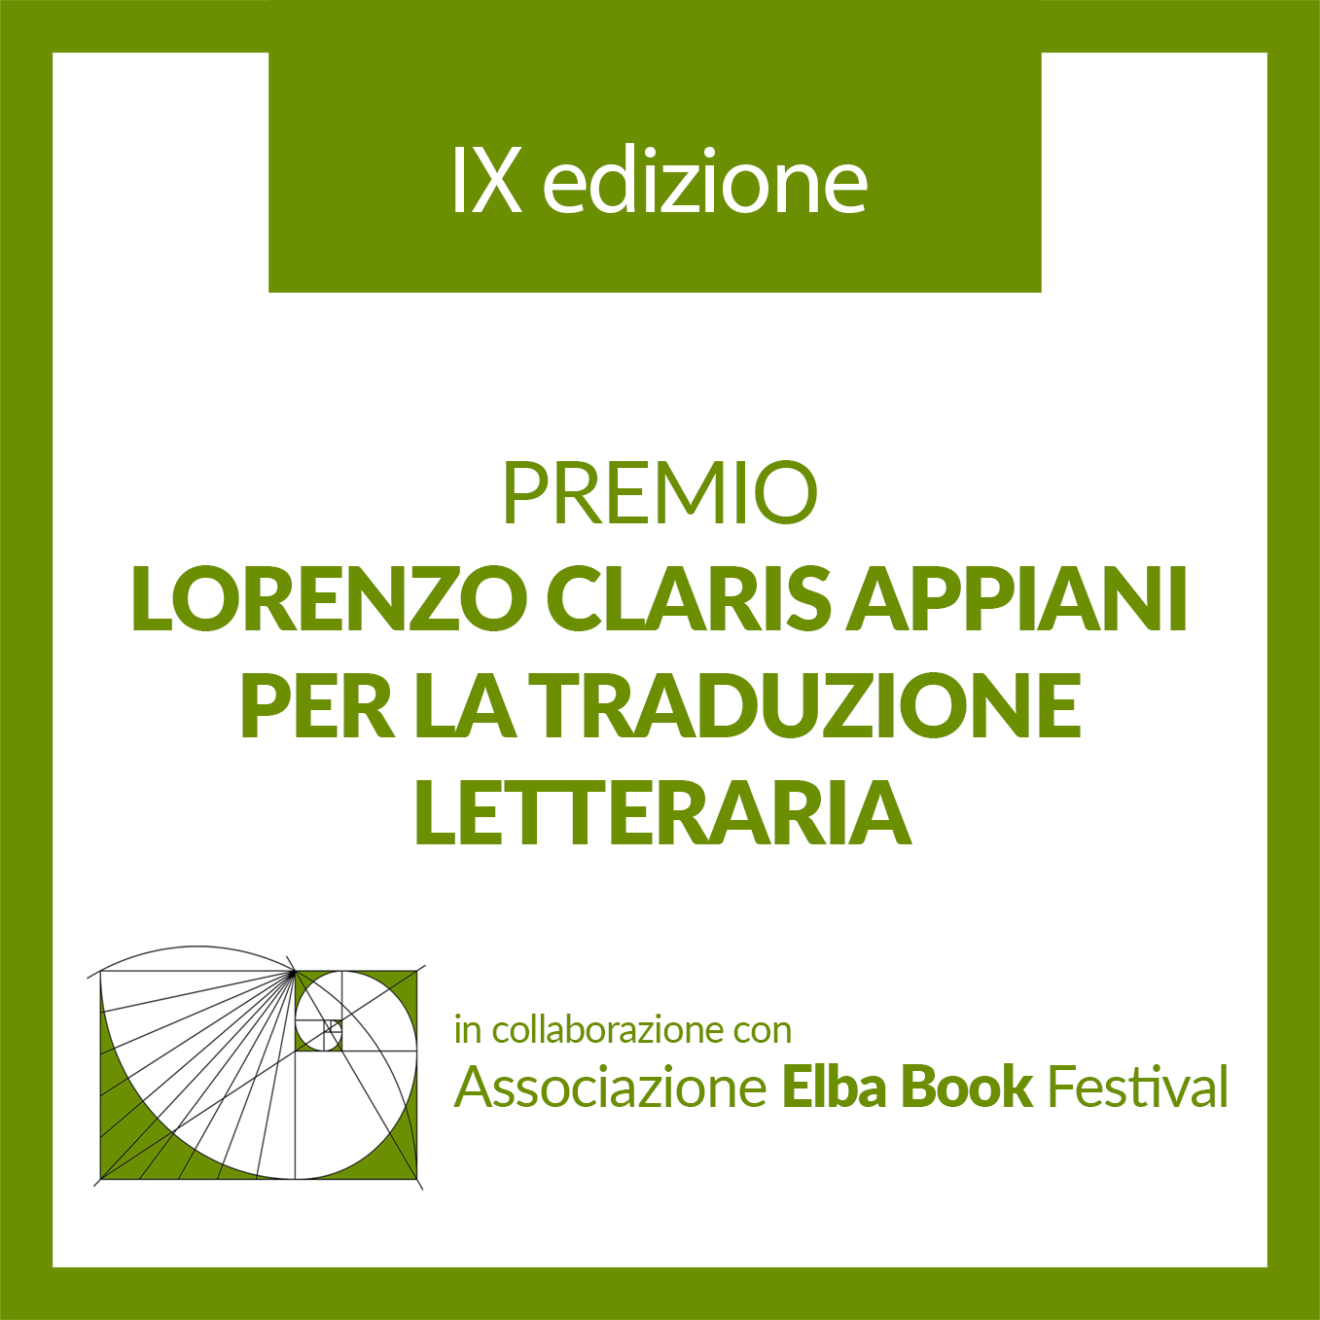 Premio Lorenzo Claris Appiani per la traduzione letteraria - IX edizione